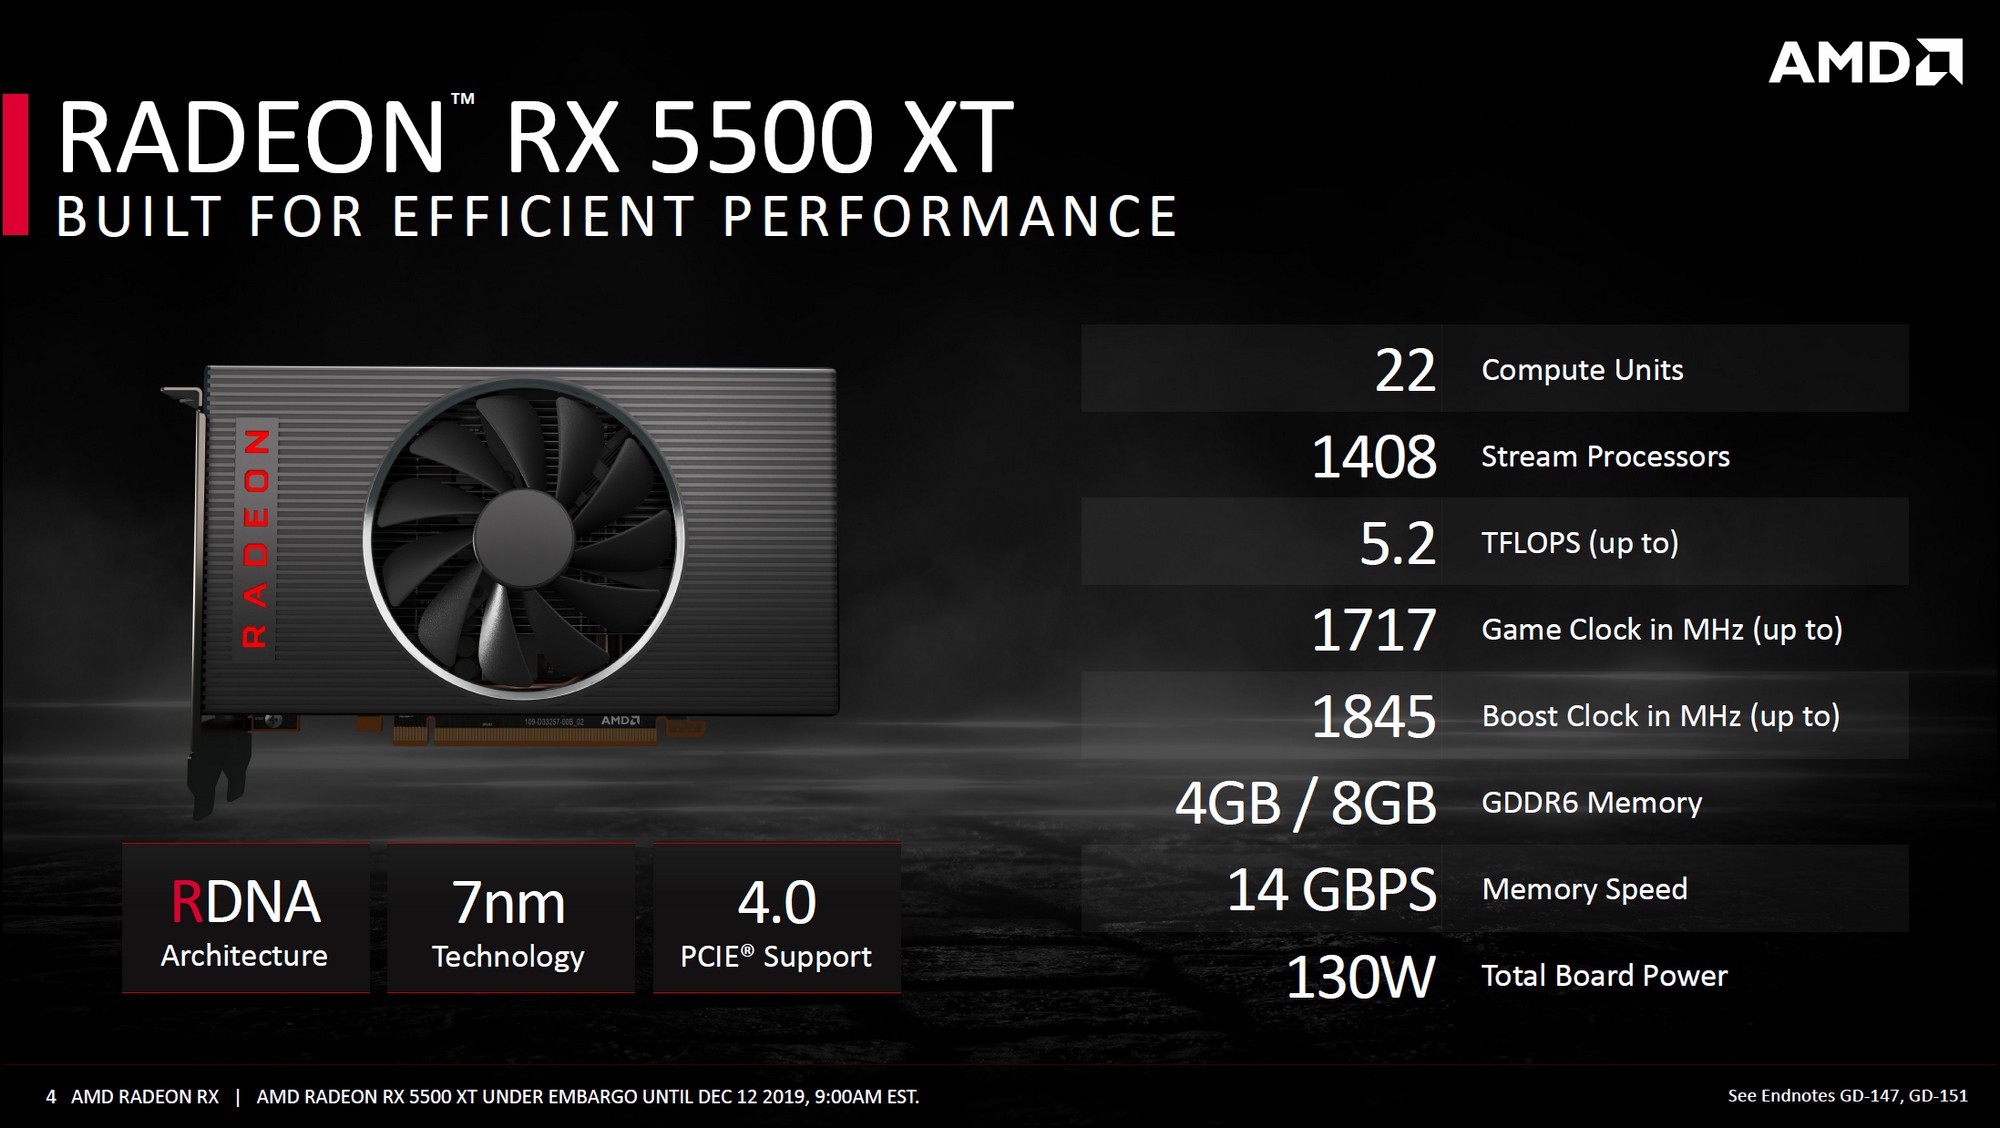 Radeon RX 5500 XT specs